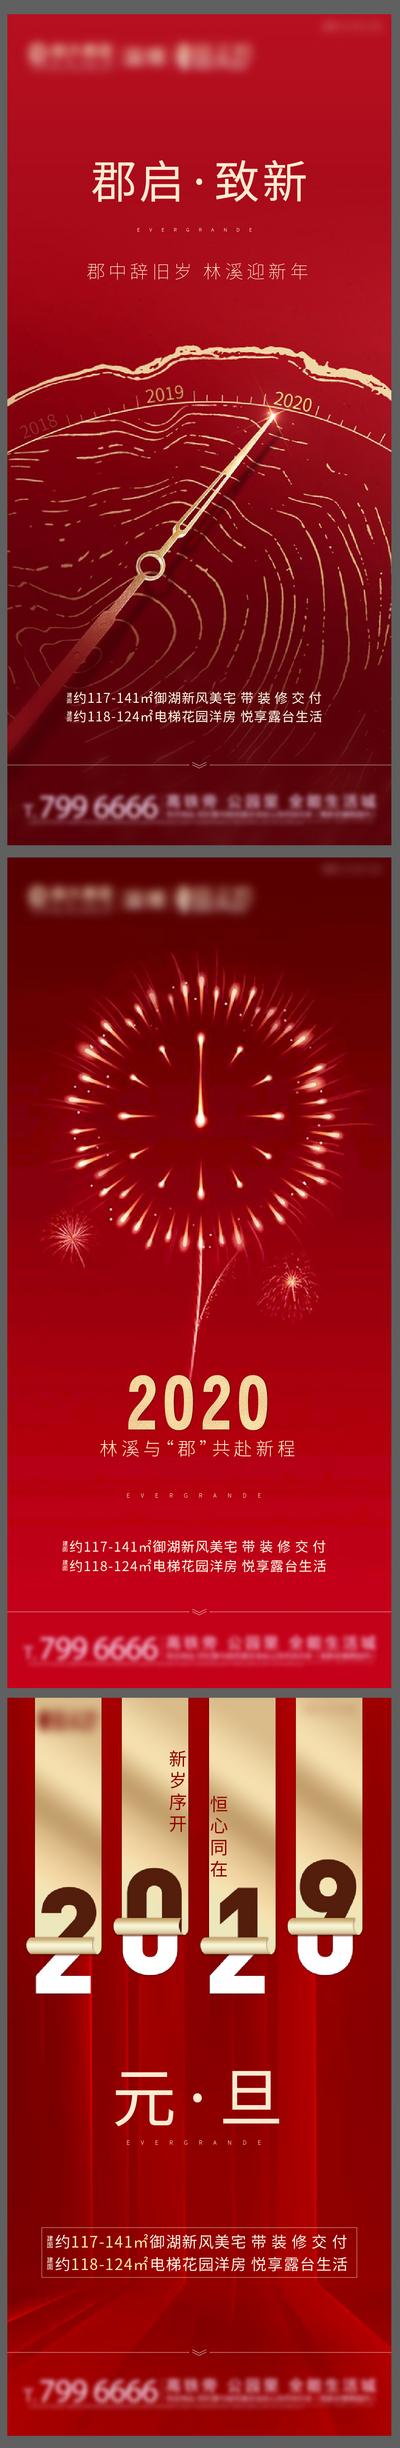 南门网 海报 房地产 2020 公历节日 元旦 系列 红金